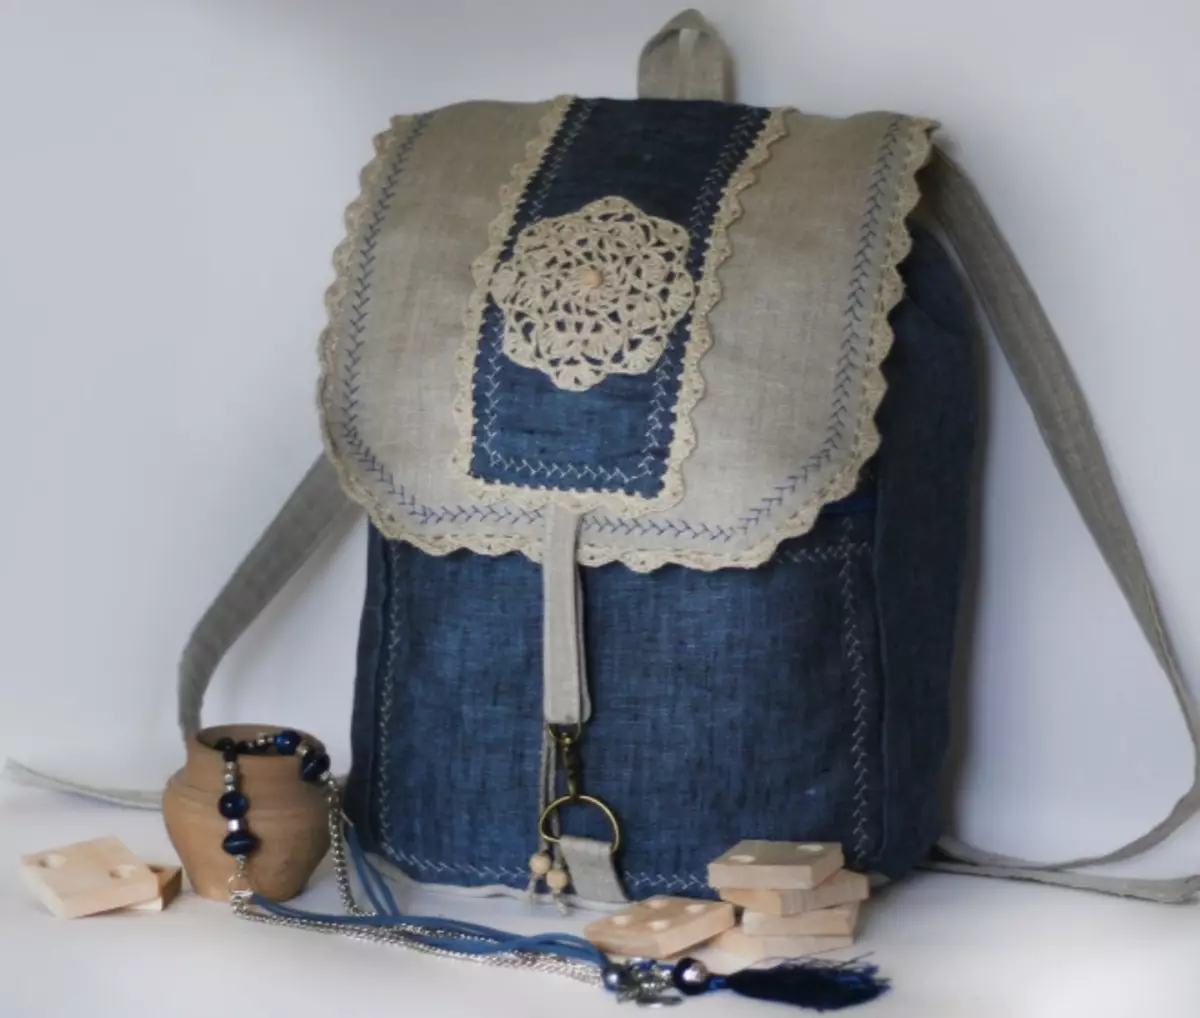 Қыздарға арналған жастар рюкзактары: жастарға арналған сәнді маталар және былғары модельдер, стильді қара қалалық әйелдер рюкзактары, танымал брендтер 15359_37